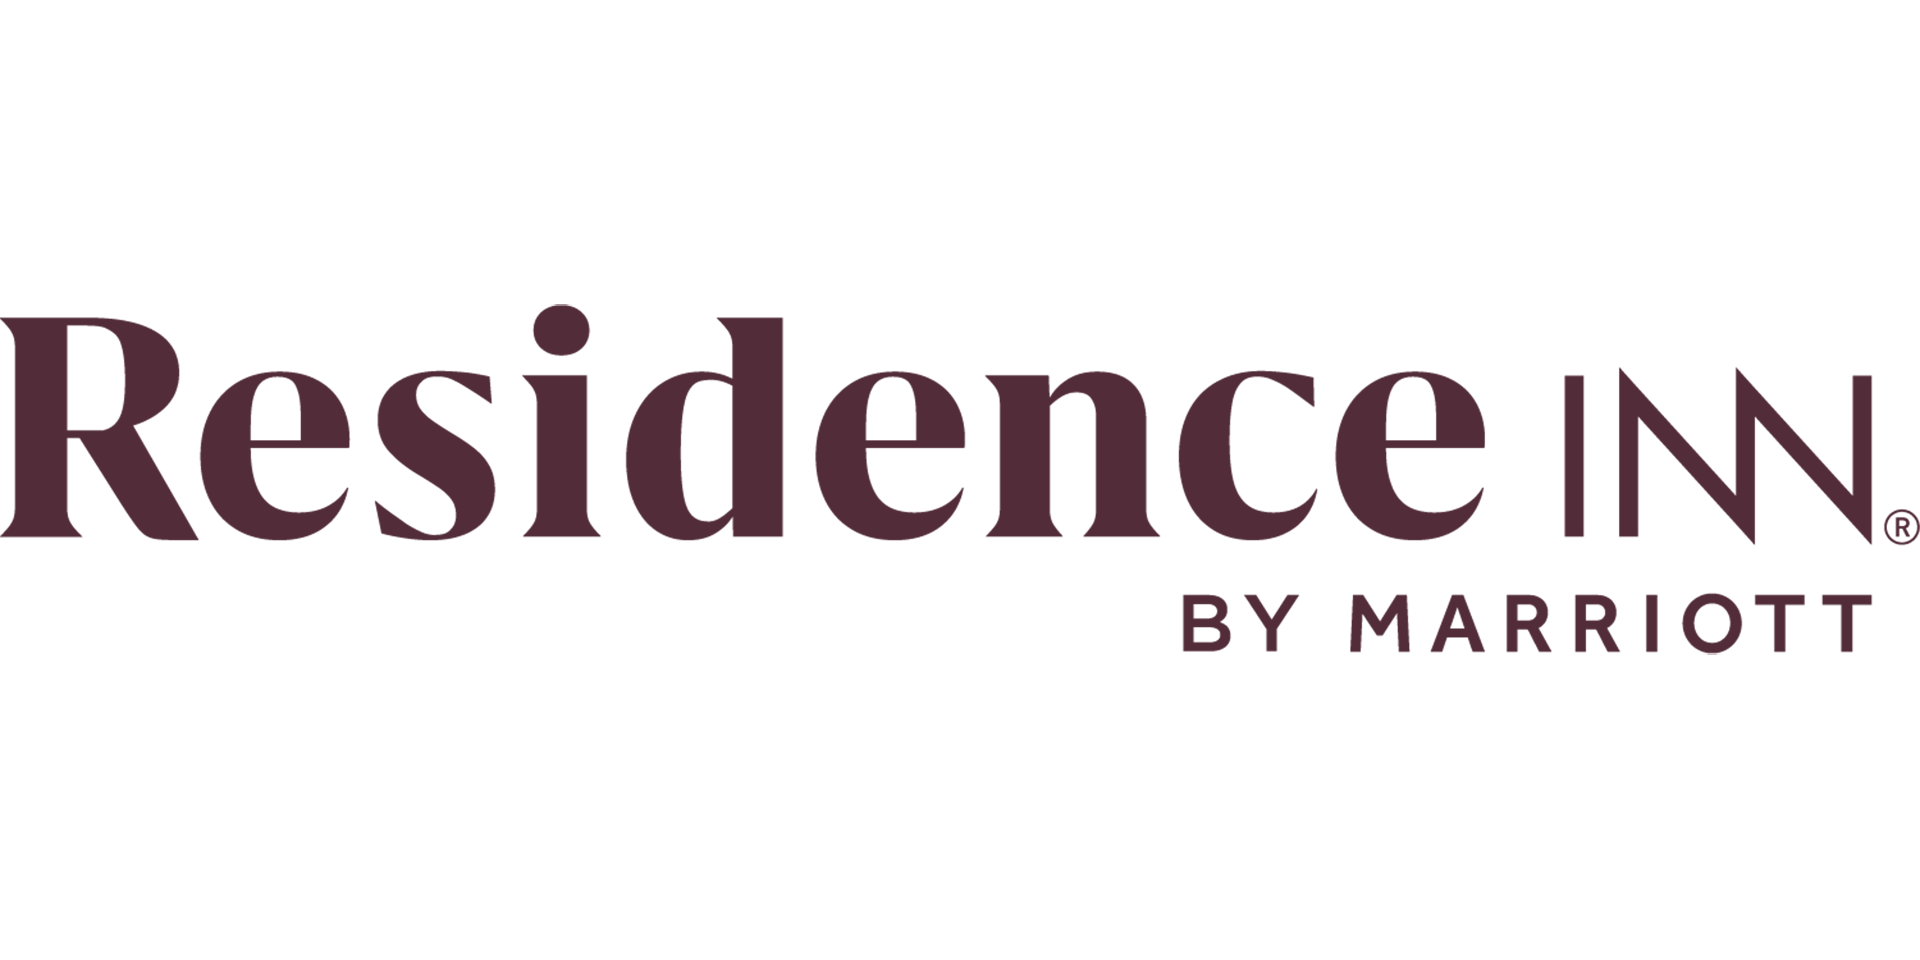 Residence Inn Logo - Residence Inn by Marriott | Marriott News Center